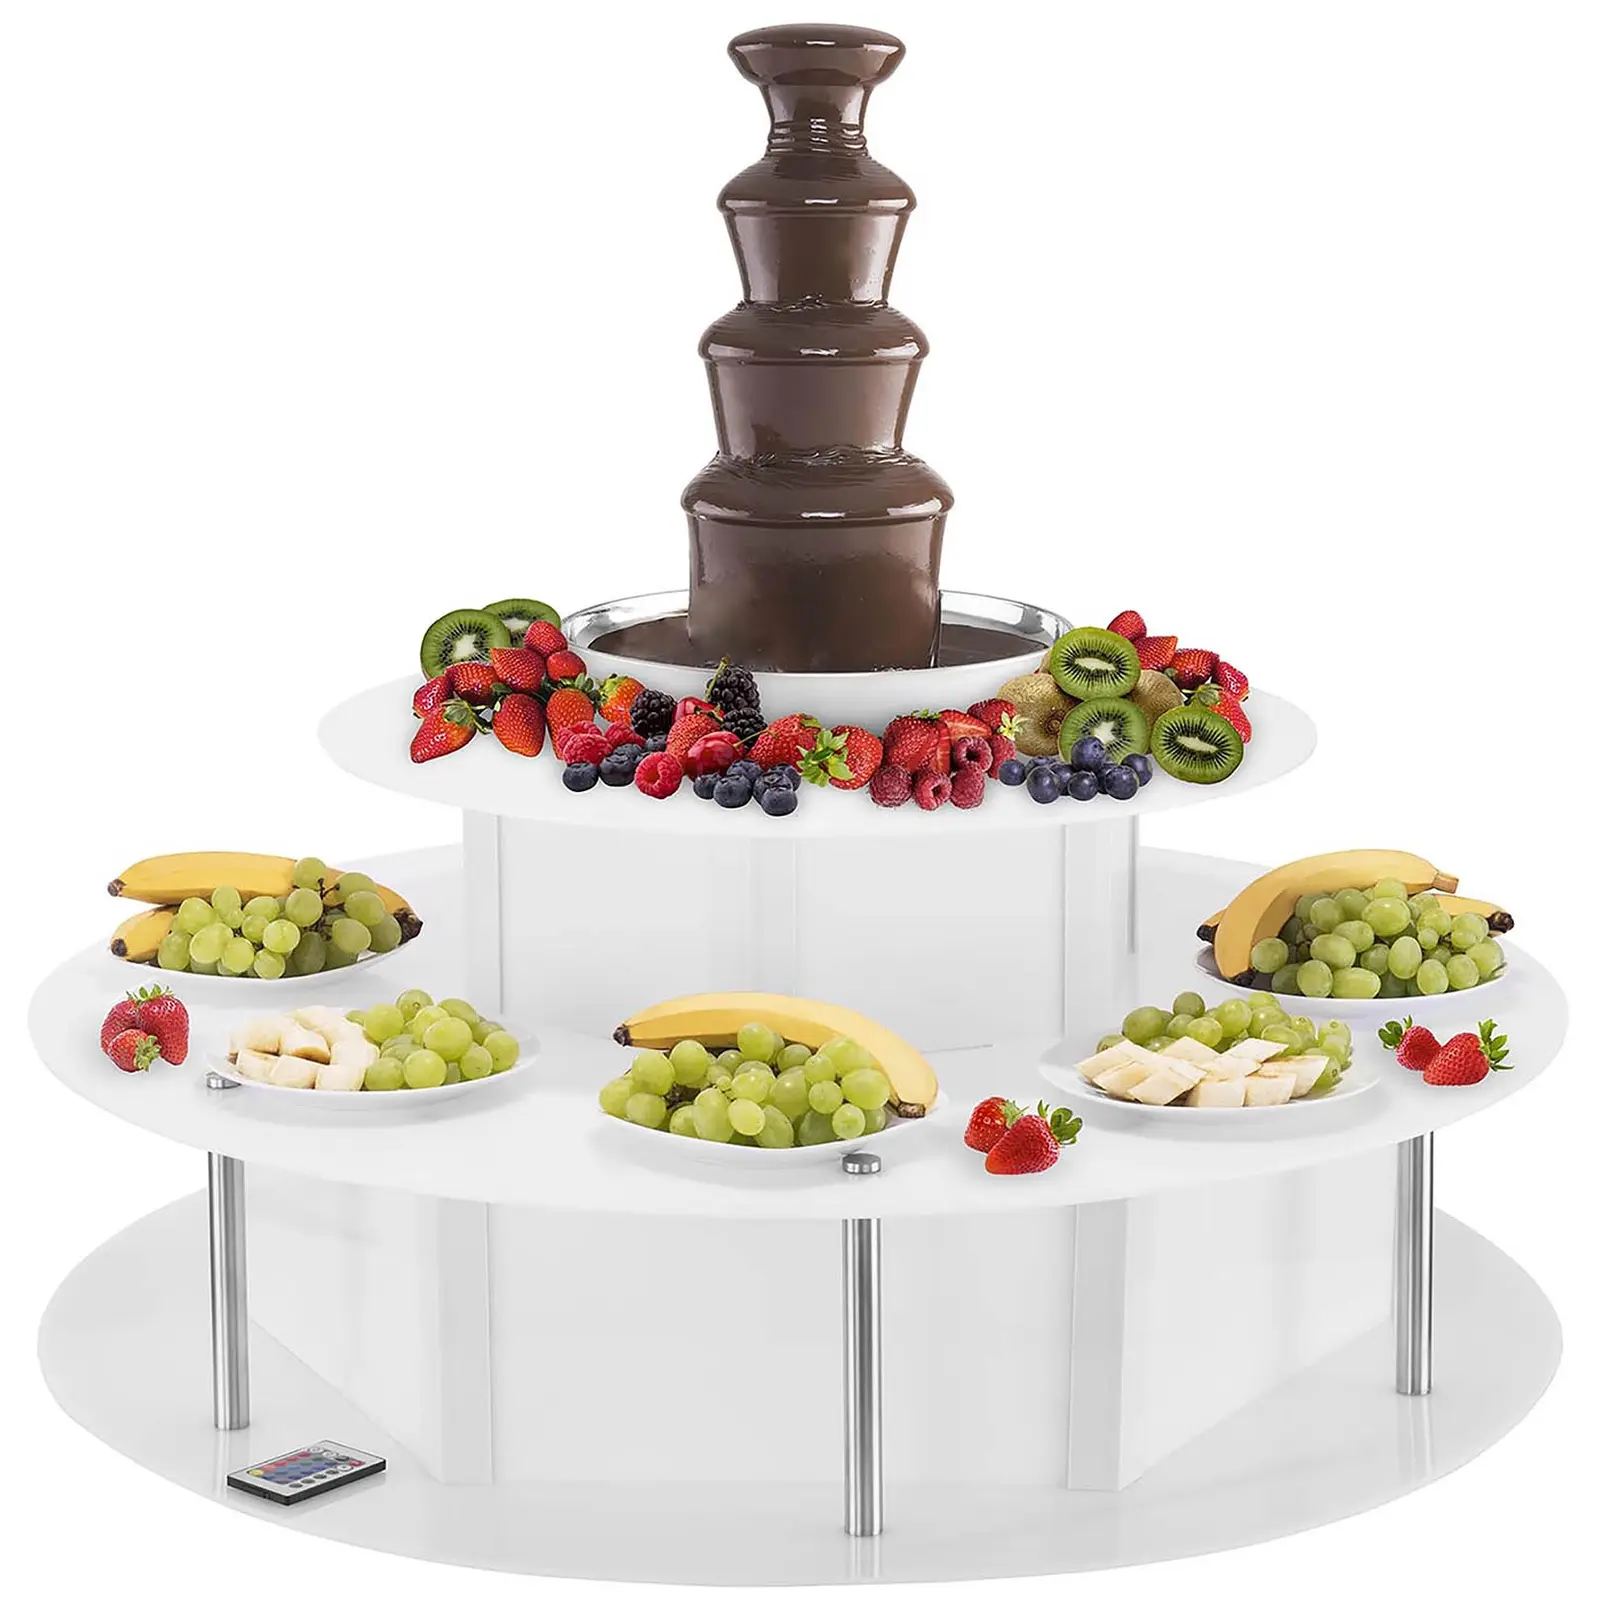 Schokoladenbrunnen Set - 4 Etagen - 6 kg plus Leuchttisch